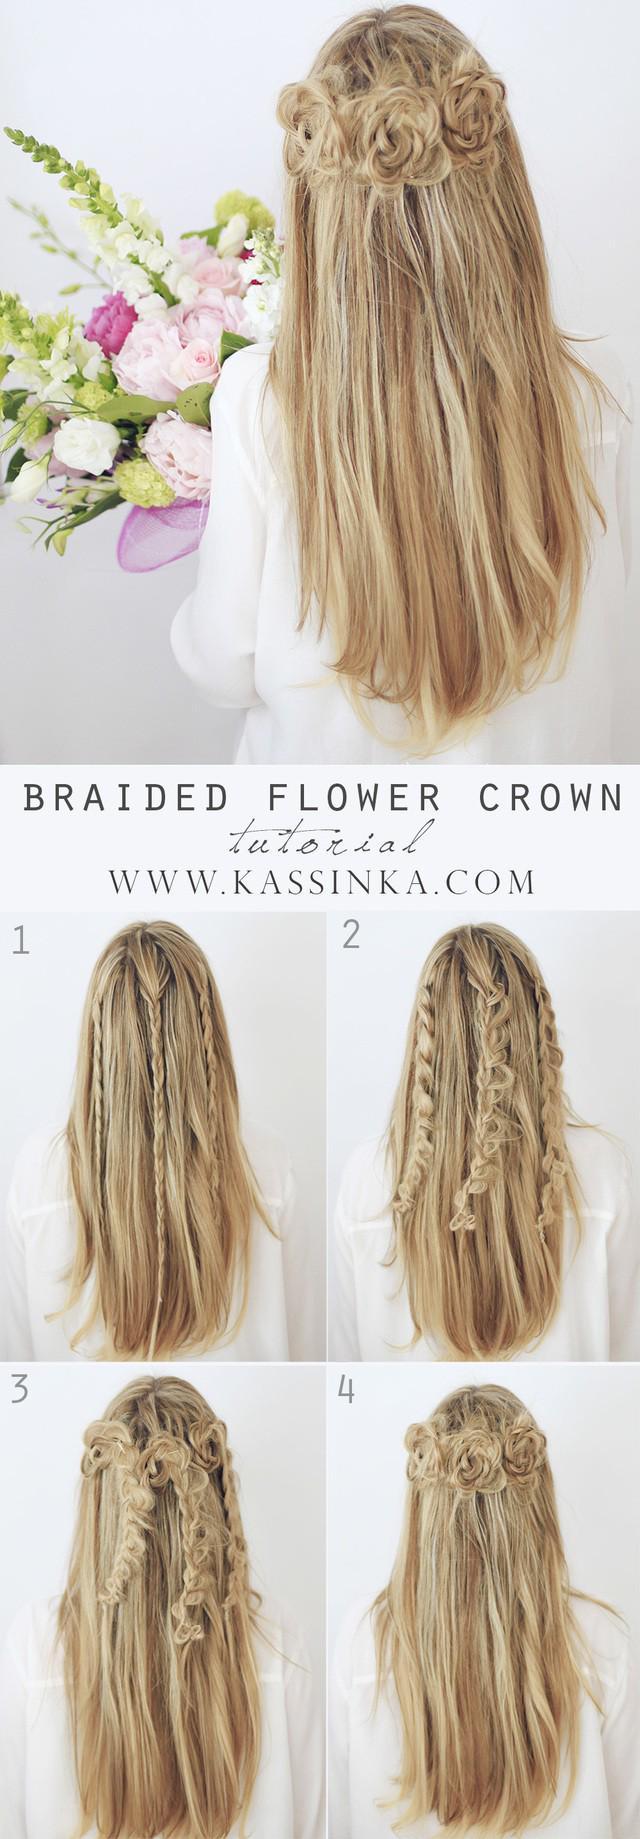 รูปภาพ:http://www.kassinka.com/wp-content/uploads/2015/05/braided-flower-crown-hair-tutorial-kassinka2.jpg